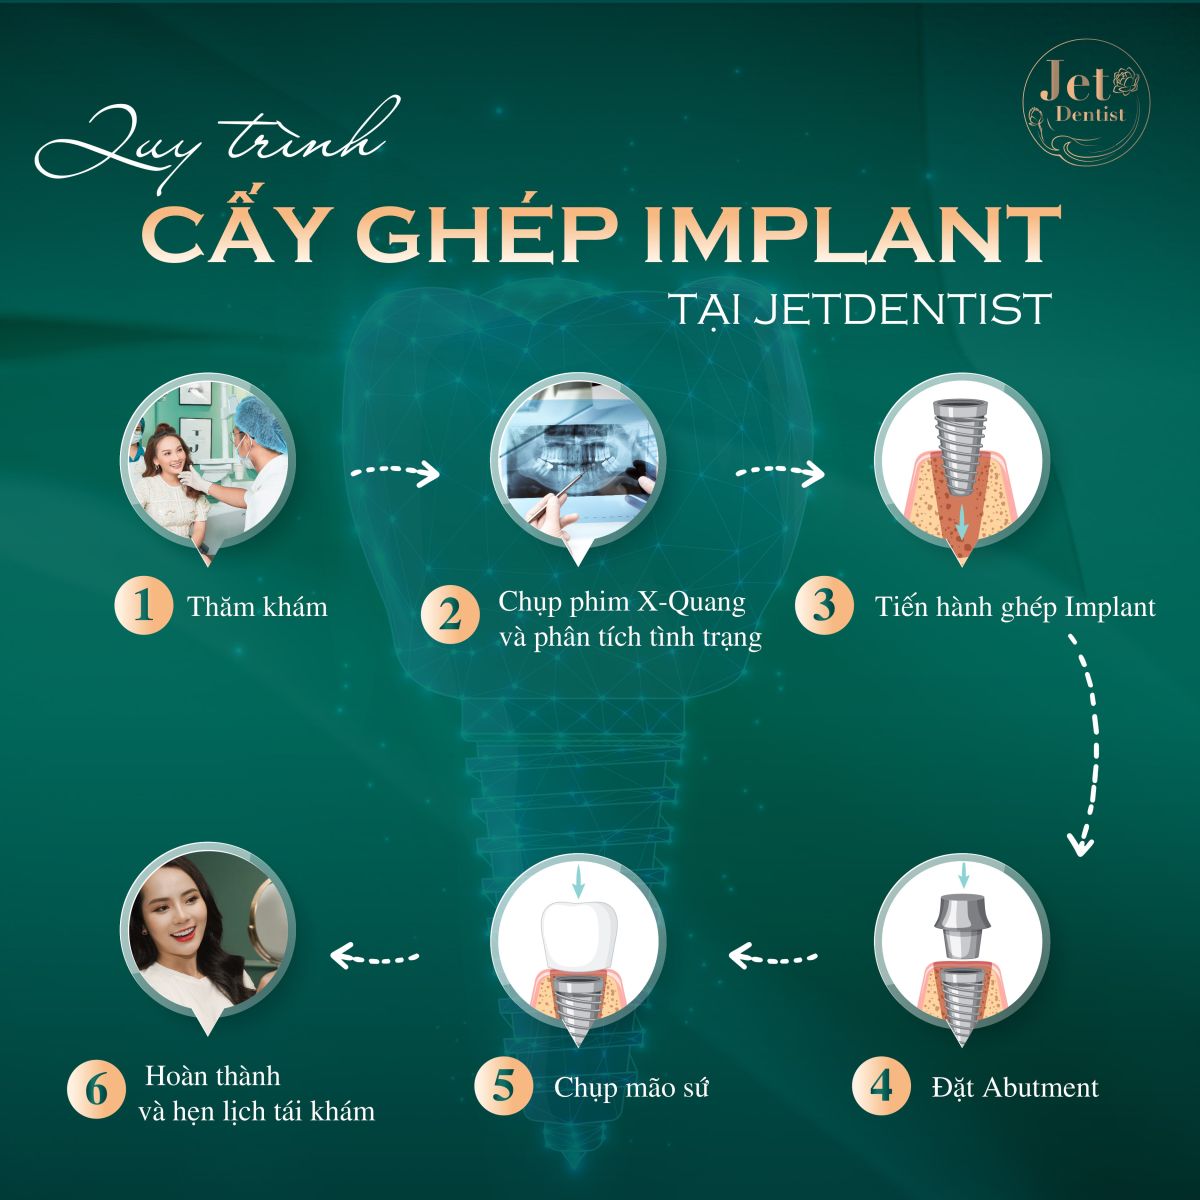 Jet Dentist với quy trình thăm khám, tư vấn và cấy ghép Implant chặt chẽ, cam kết hiệu quả tối ưu